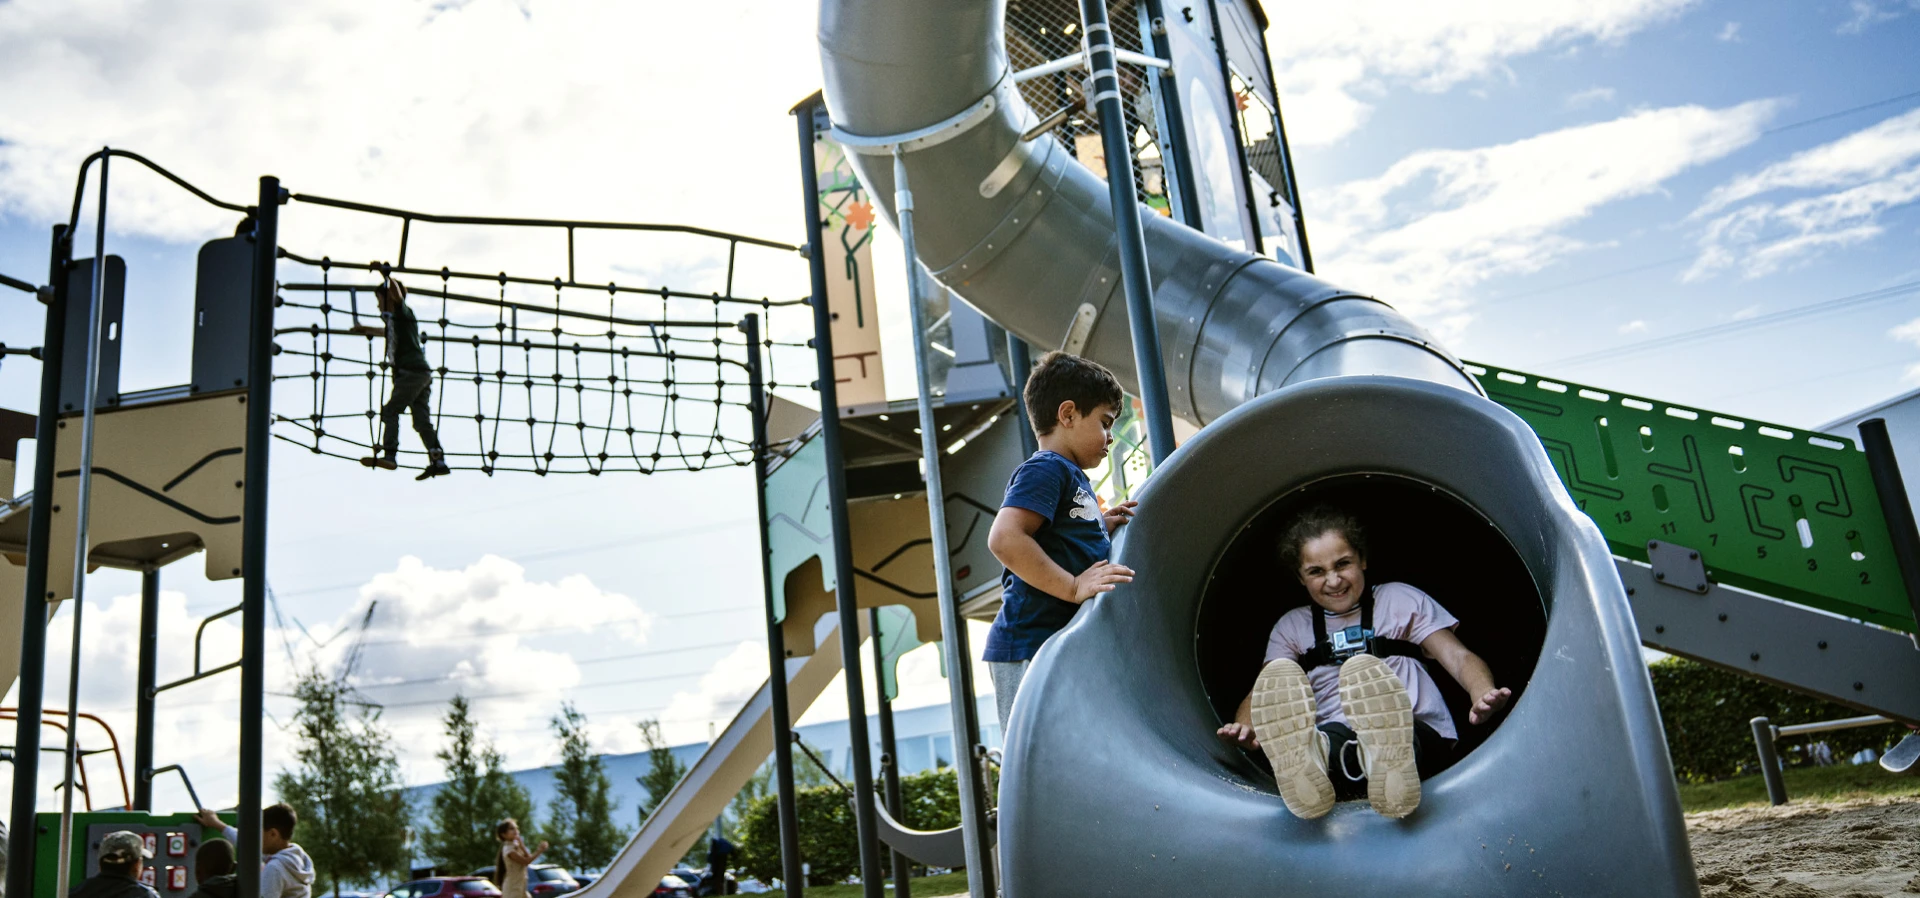 kompan ultimas noticias niños jugando en un parque infantil de gigantes